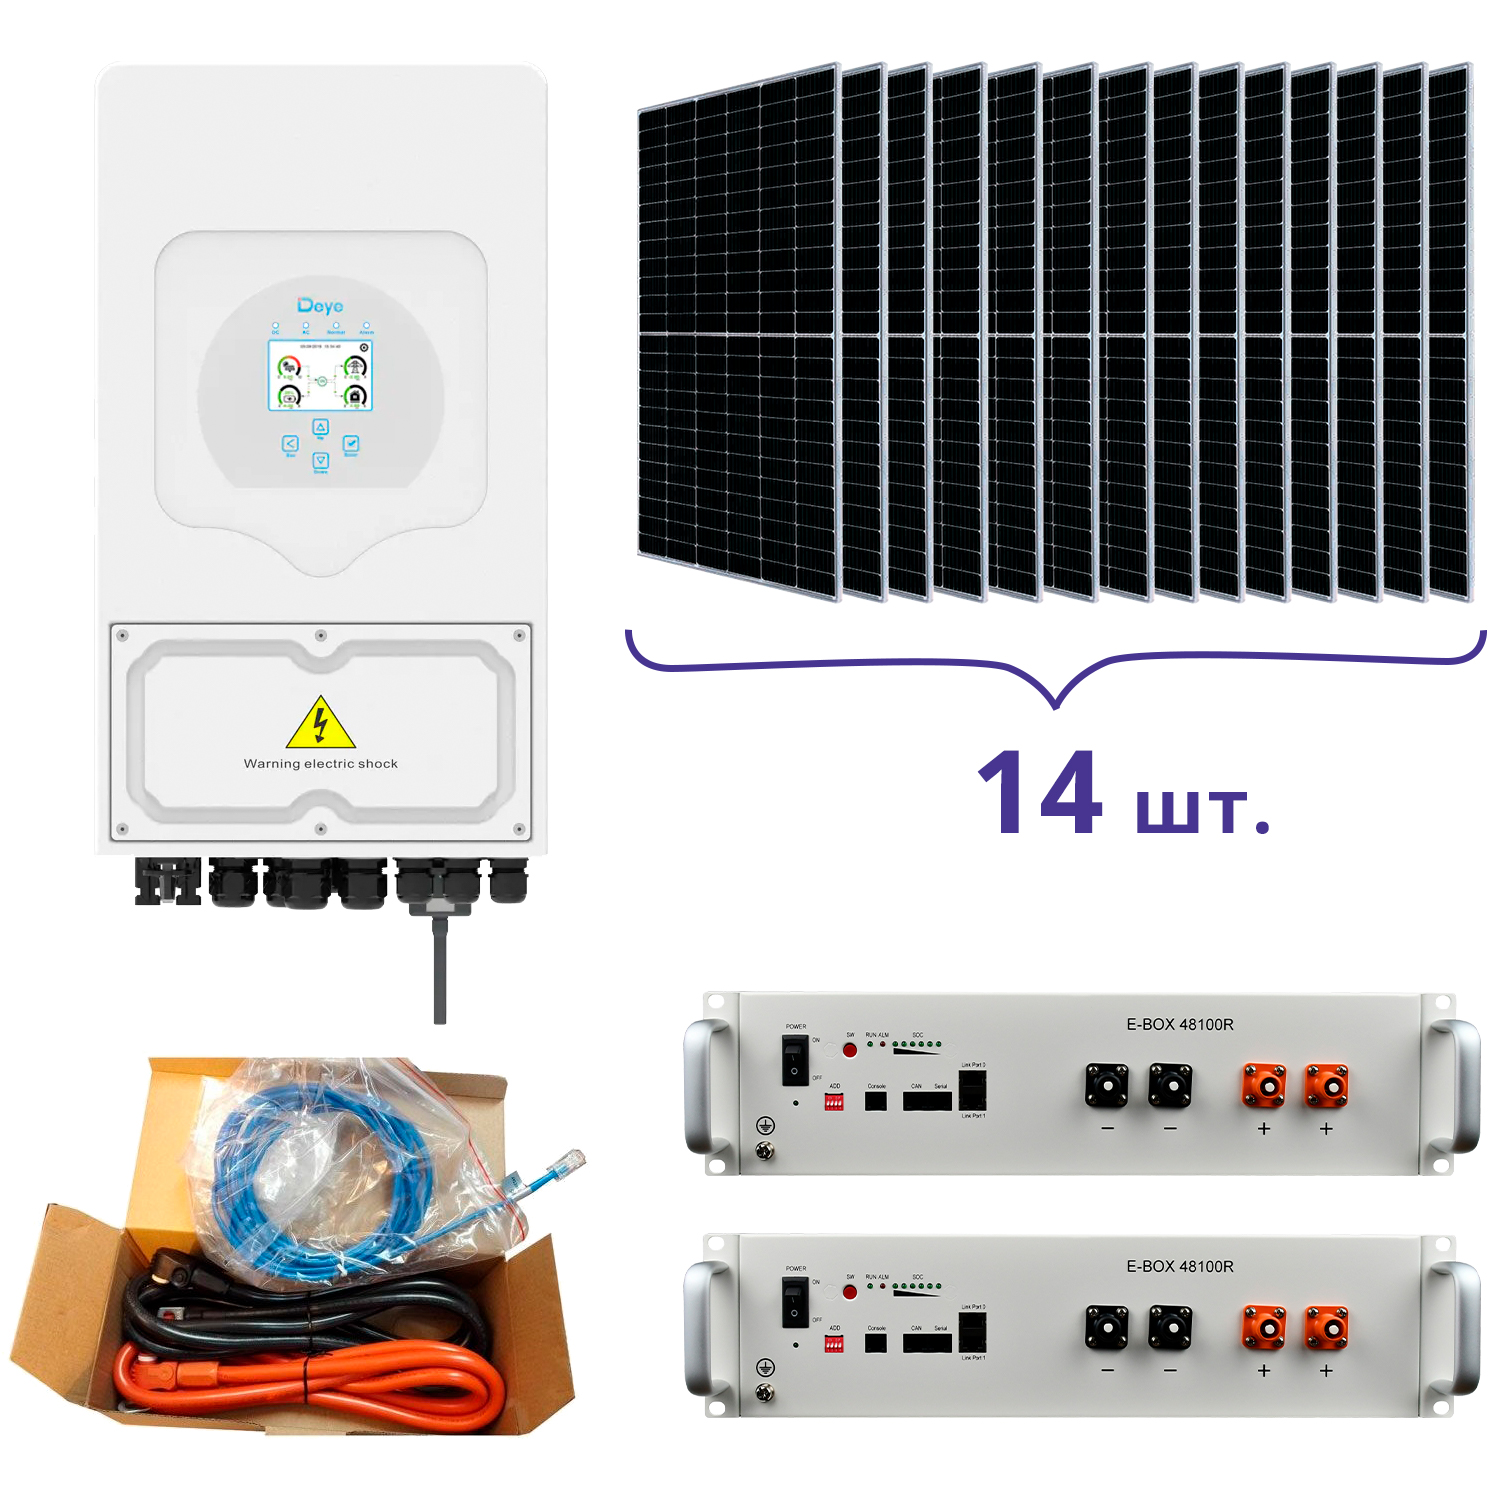 Отзывы система резервного питания Deye SUN-5K-SG03LP1-EU+Pytes E-BOX-48100R-2шт.+Battery Cable Kit-1шт.+JA Solar JAM72S20-460/MR 460 Wp, Mono-14шт.+кабель